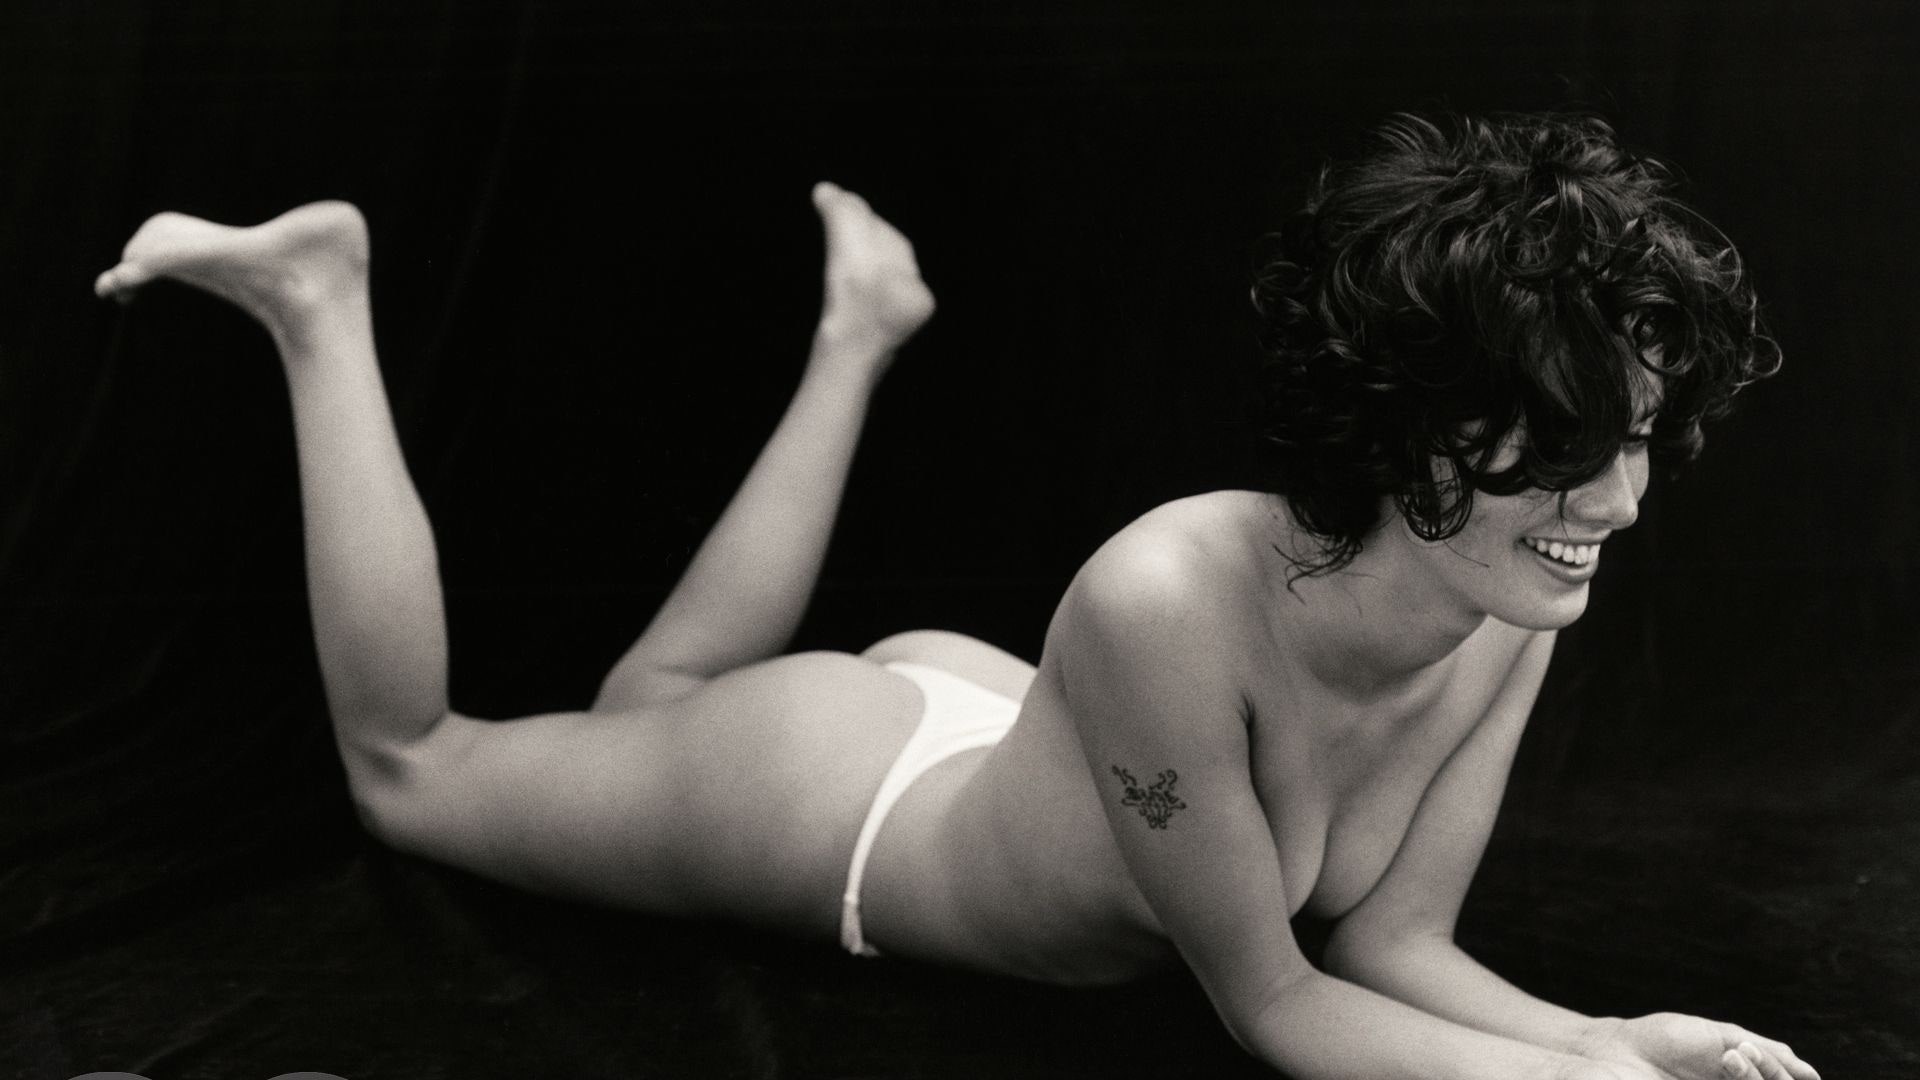 Best of Lena headey naked photos